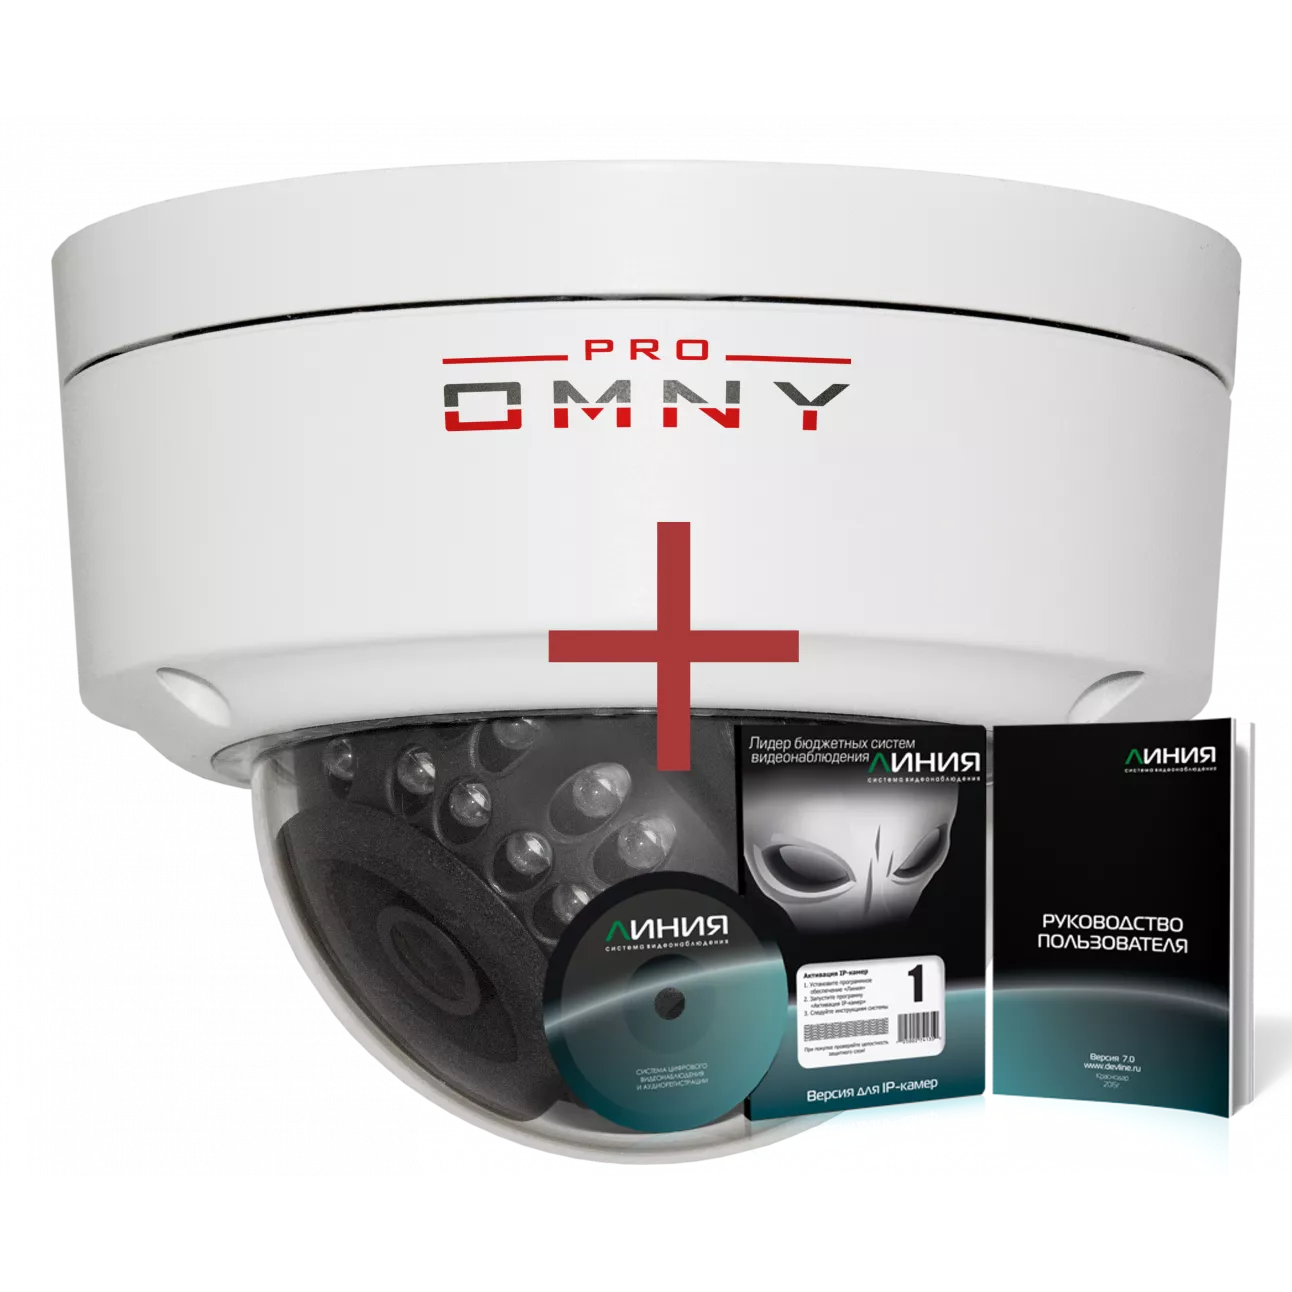 IP камера OMNY 606M PRO купольная мини 4Мп, c ИК подсветкой, 2.8мм, PoE,12В, SD карта + ПО Линия в комплекте